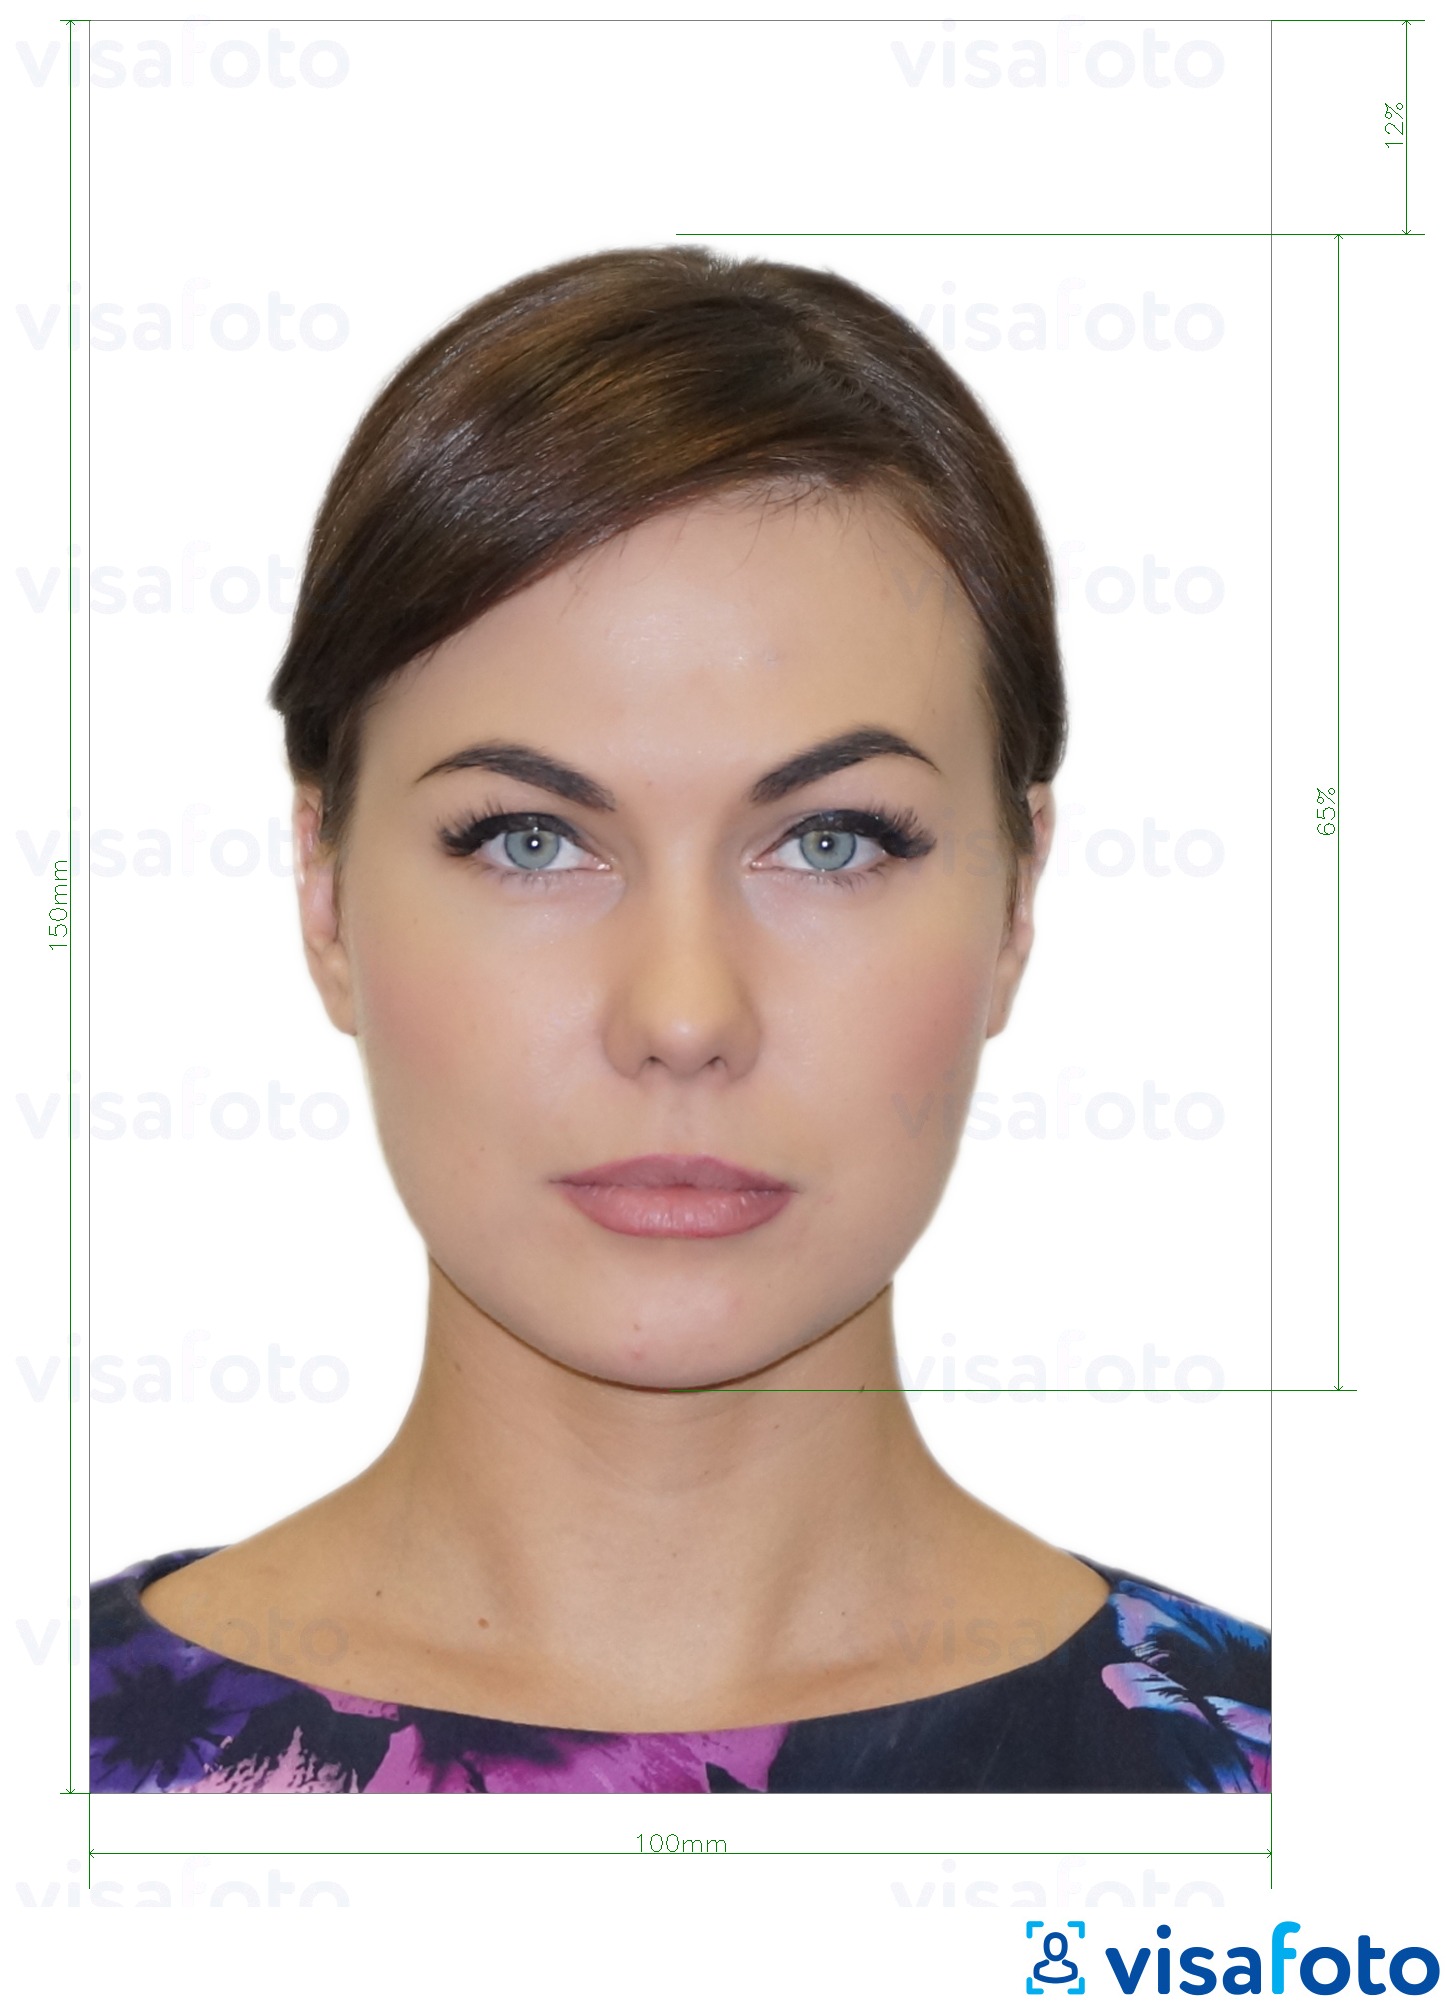 Nuotraukos pavyzdys Moldovos asmens tapatybės kortelė (Buletin de identitate) 10x15 cm su tikslaus dydžio specifikacija